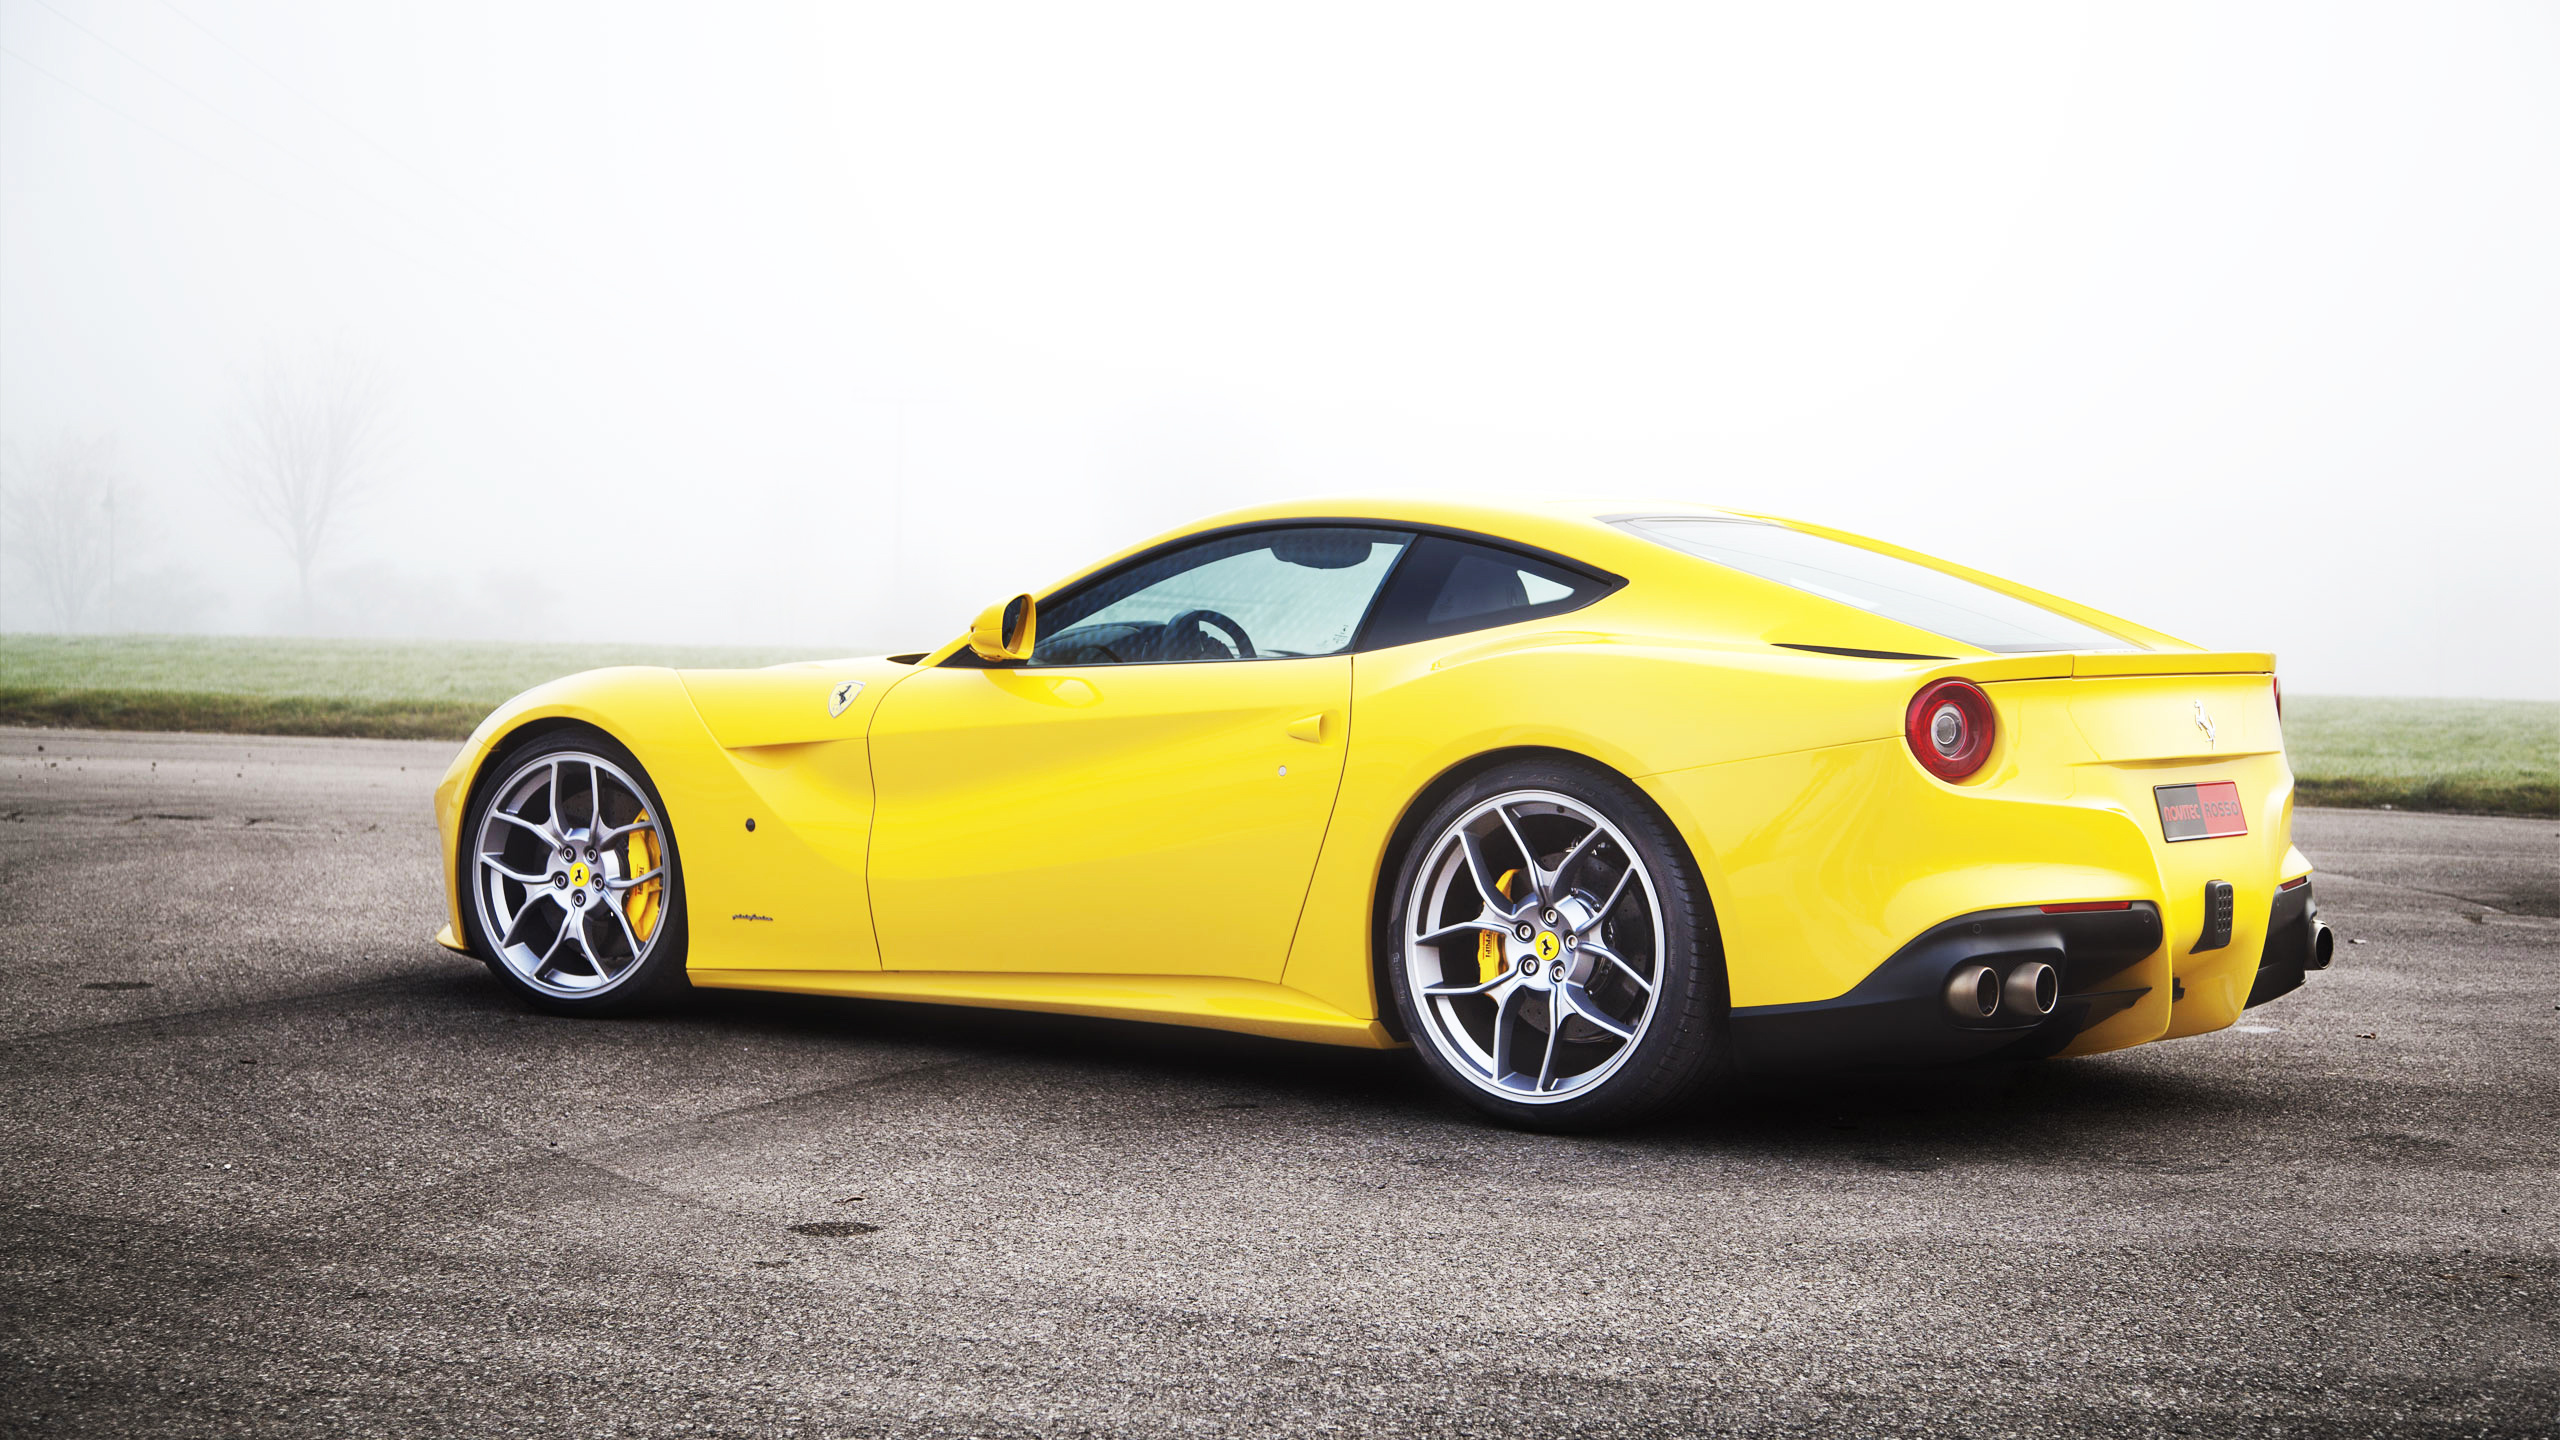 Yellow Ferrari 458 Italia Coupe. Wallpaper in 2560x1440 Resolution